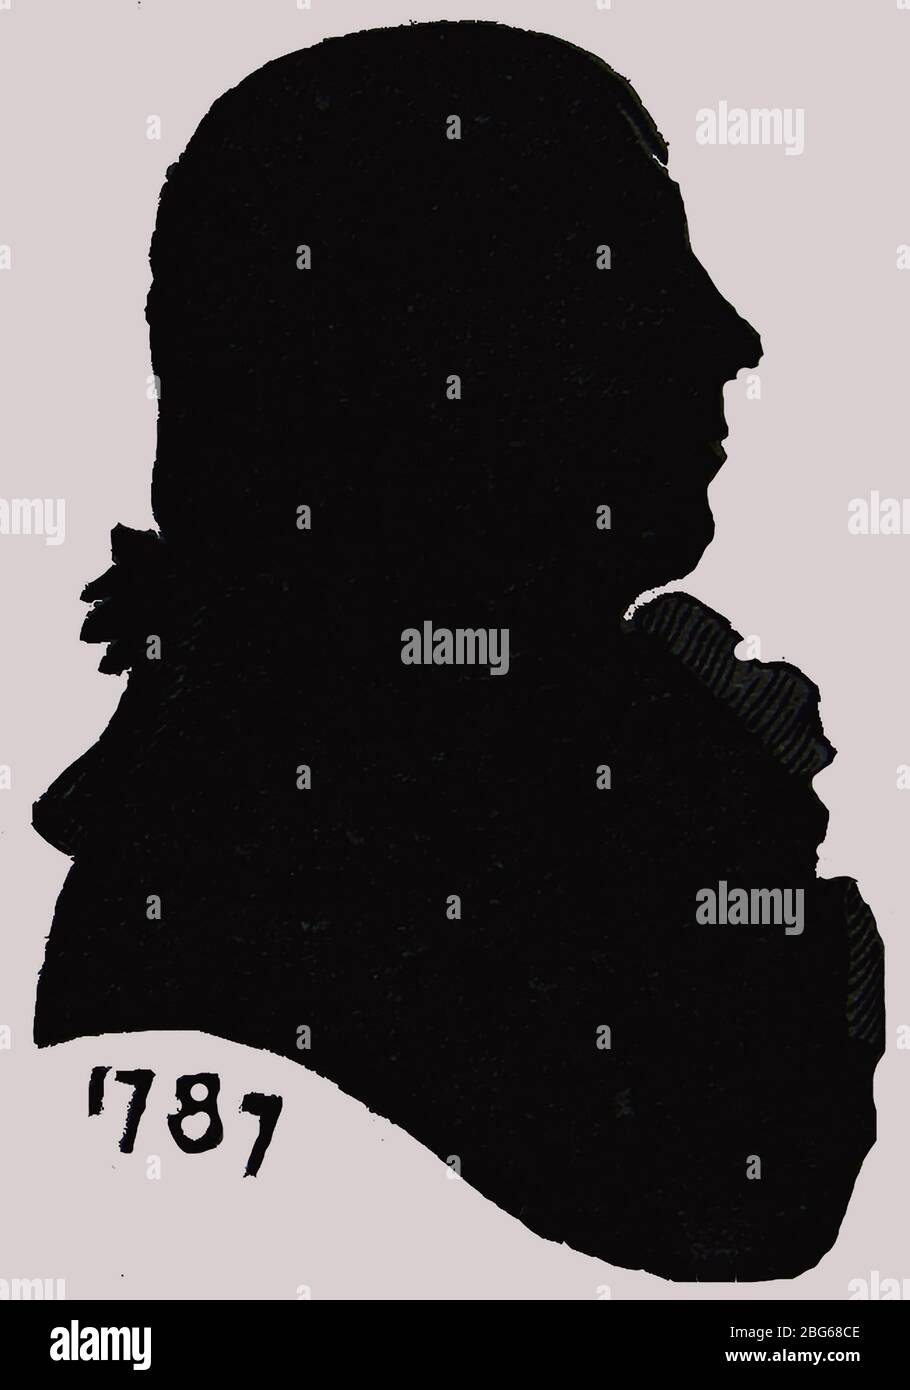 Una silhouette tratta dalla vita di Robert Burns (1759 – 1796) tagliata nel 1787. Si dice che sia una "vera somiglianza". Burns era anche conosciuto come il Bard Nazionale, il Bard dell'Ayrshire e il poeta di Plowman. È il più conosciuto dei poeti che hanno scritto nella lingua scozzese e nel dialetto scozzese, le sue canzoni e poesie più conosciute, spesso eseguite a Hogmanay (31 dicembre) includono - 'Auld Lang Syne', 'Scots Wha Hae', 'Tam o' Shanter' e (il mio amore è come) 'UN Rosso, Red Rose'. Burns era un Freemason. Gli scozzesi di tutto il mondo celebrano la notte di Burn in occasione dell'anniversario della sua nascita, il 25 gennaio. Foto Stock